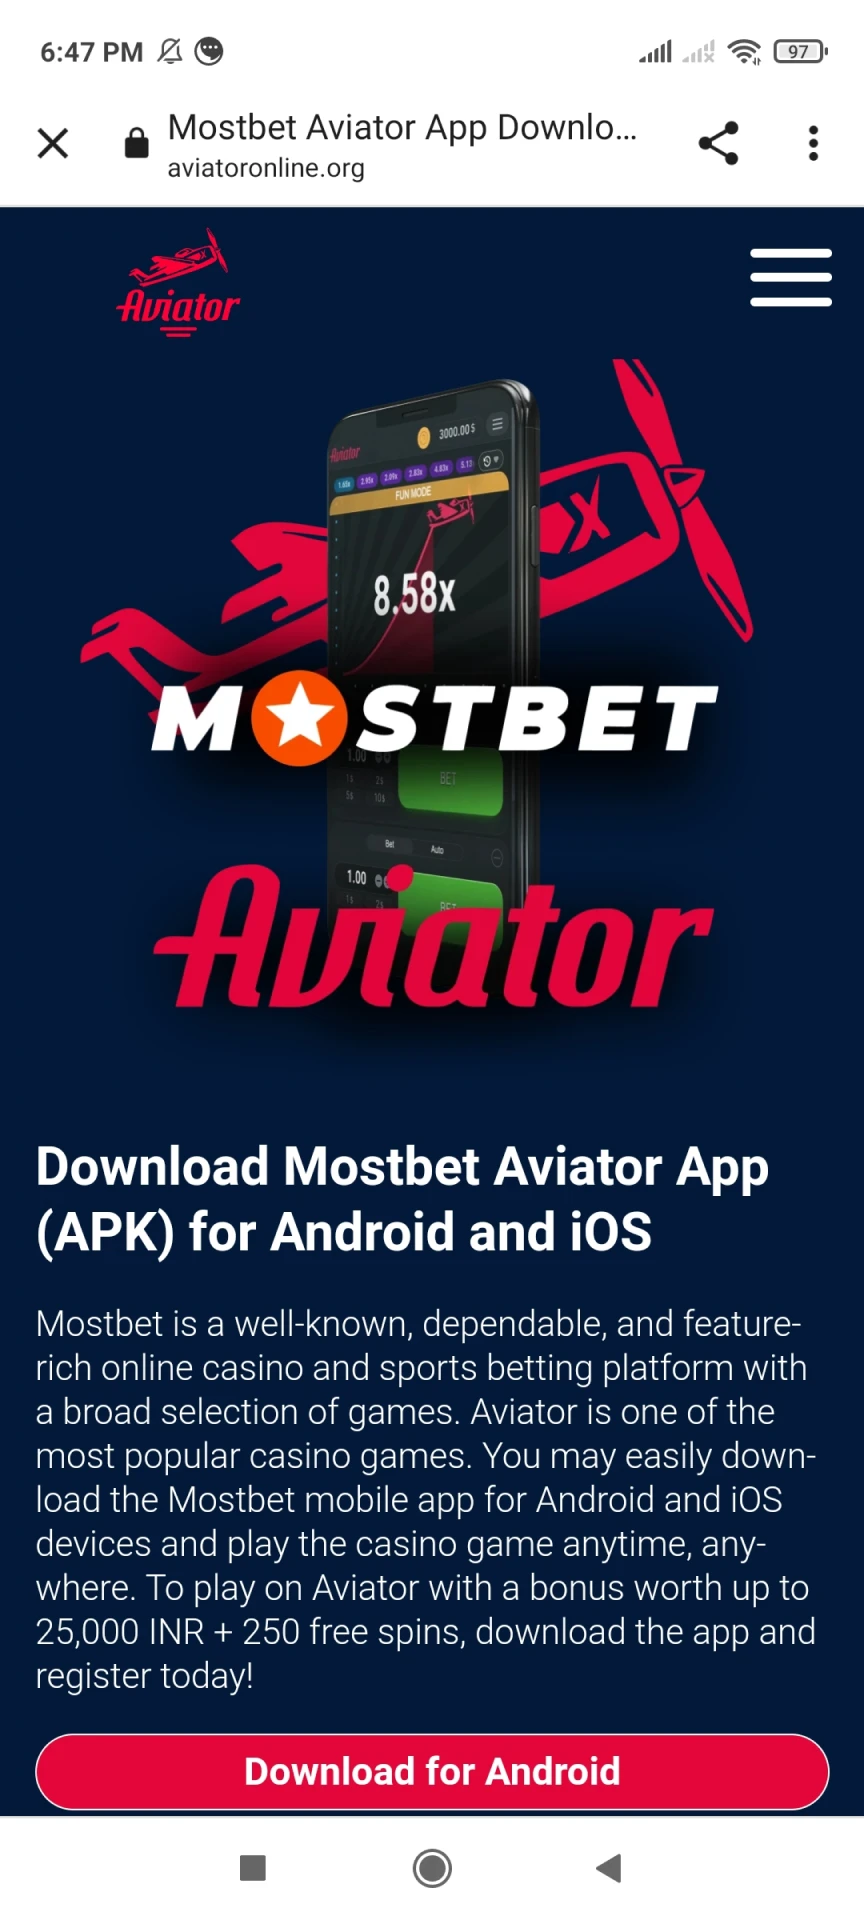 Siga o link para fazer o download do aplicativo Mostbet.